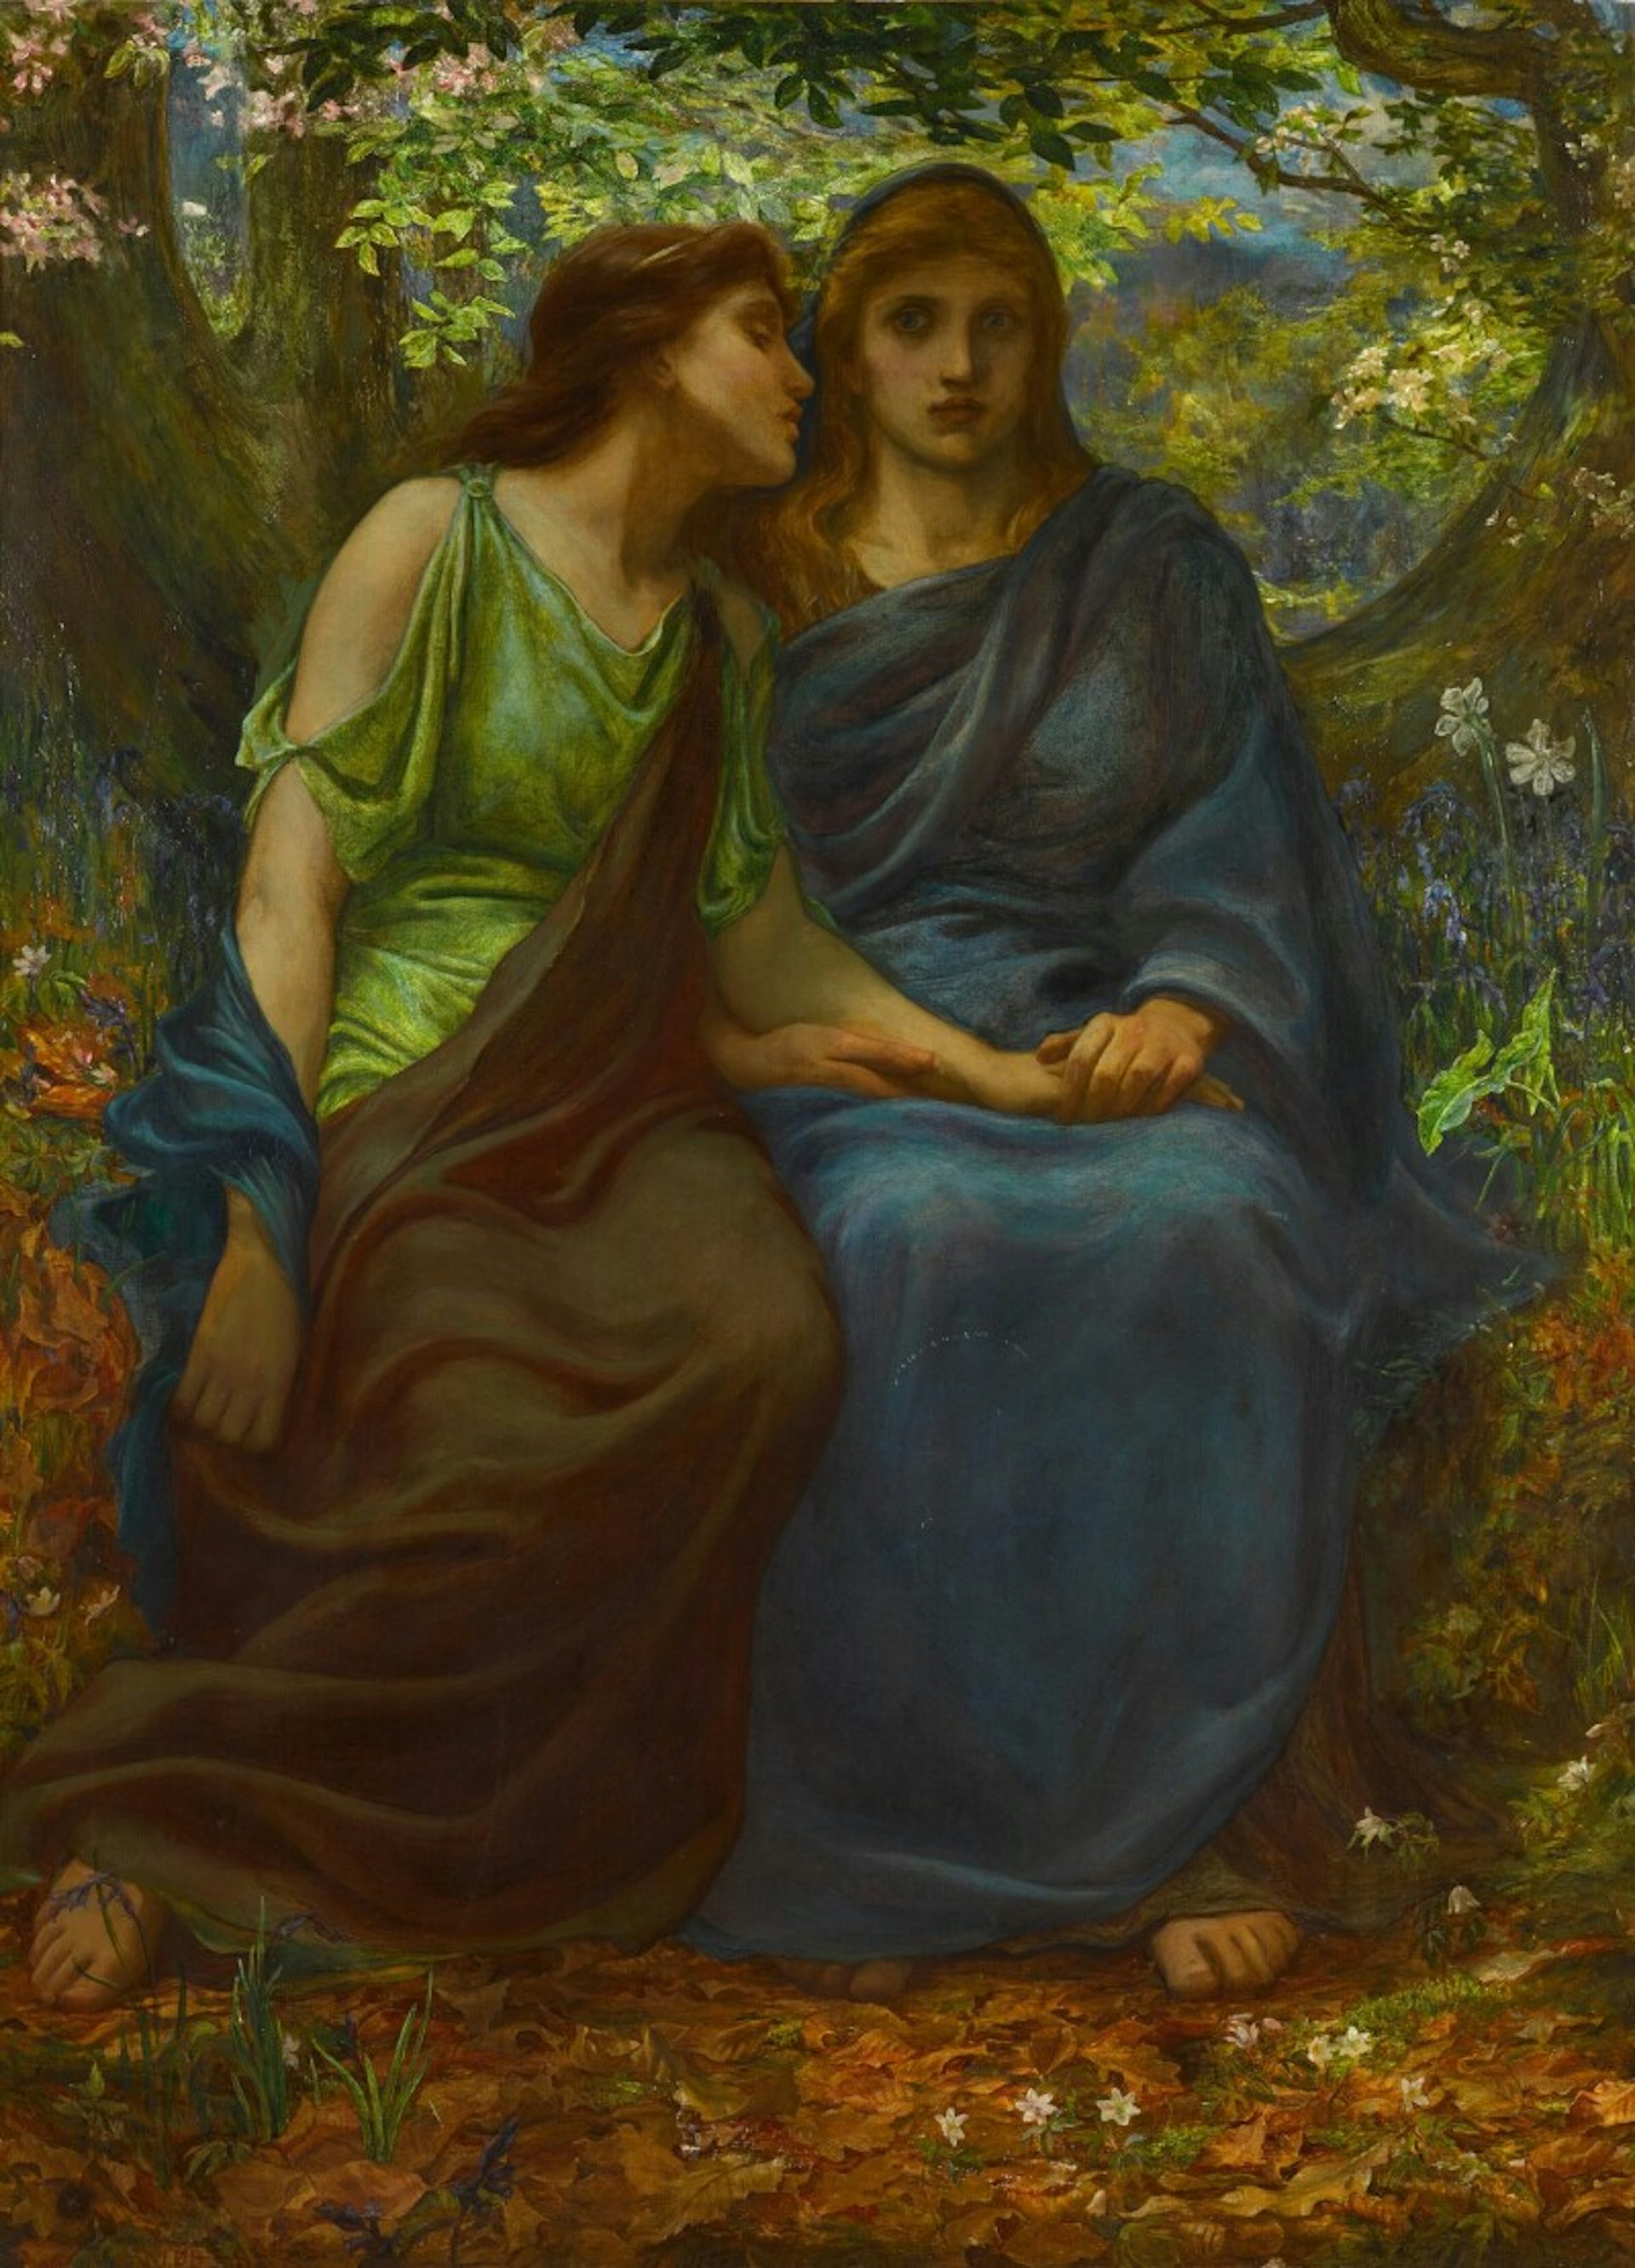 Demeter and Persephone by John D. Batten